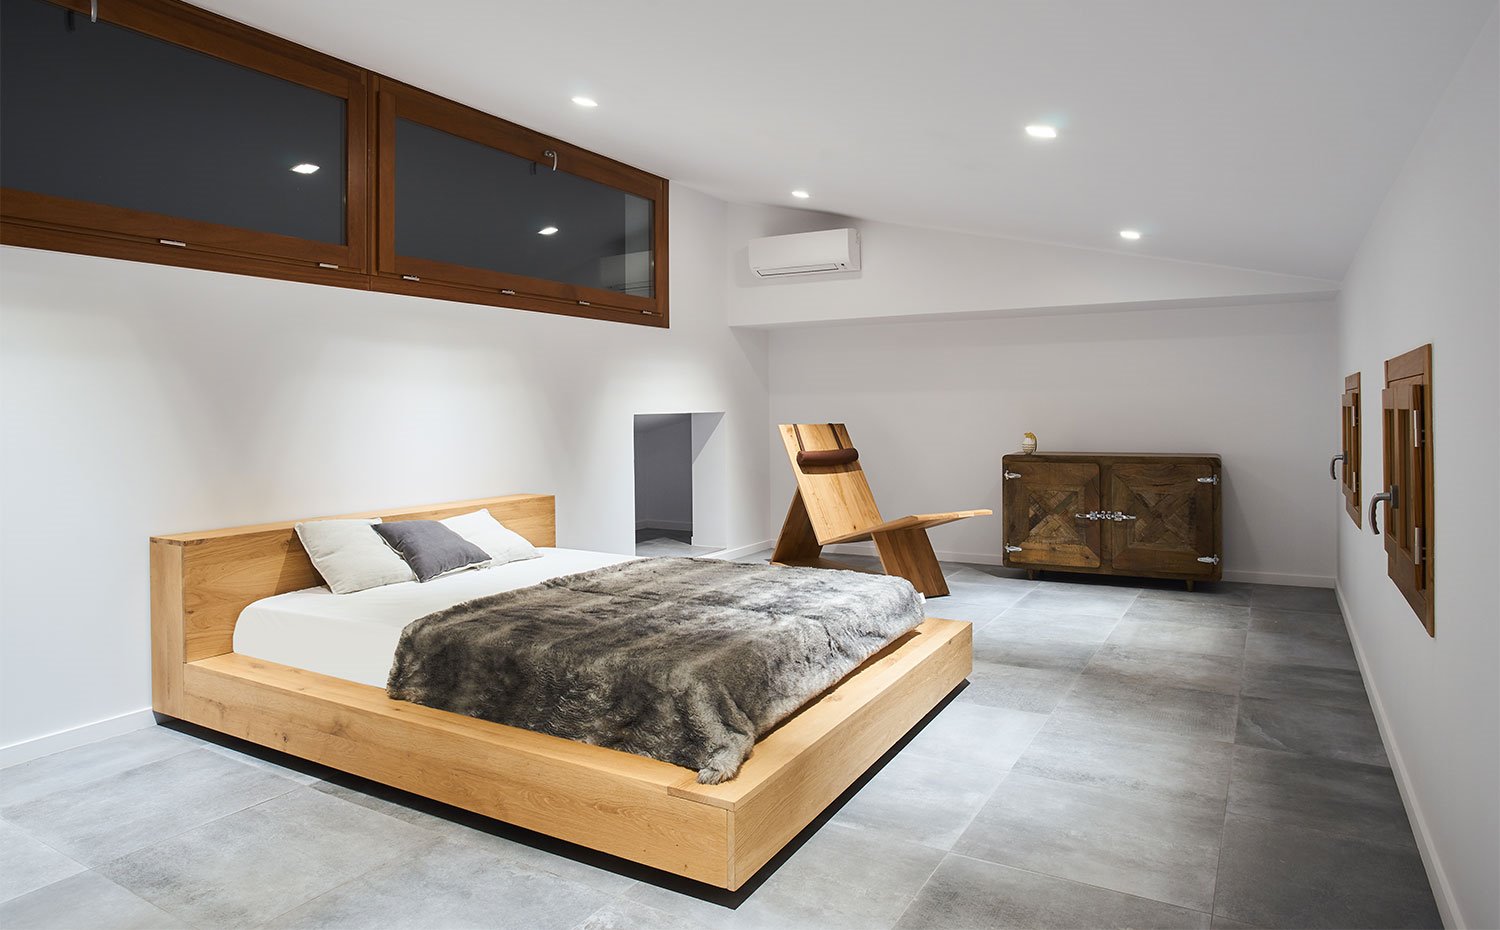 Dormitorio principal con estructura de cama de madera natural y suelo cerámico en gris